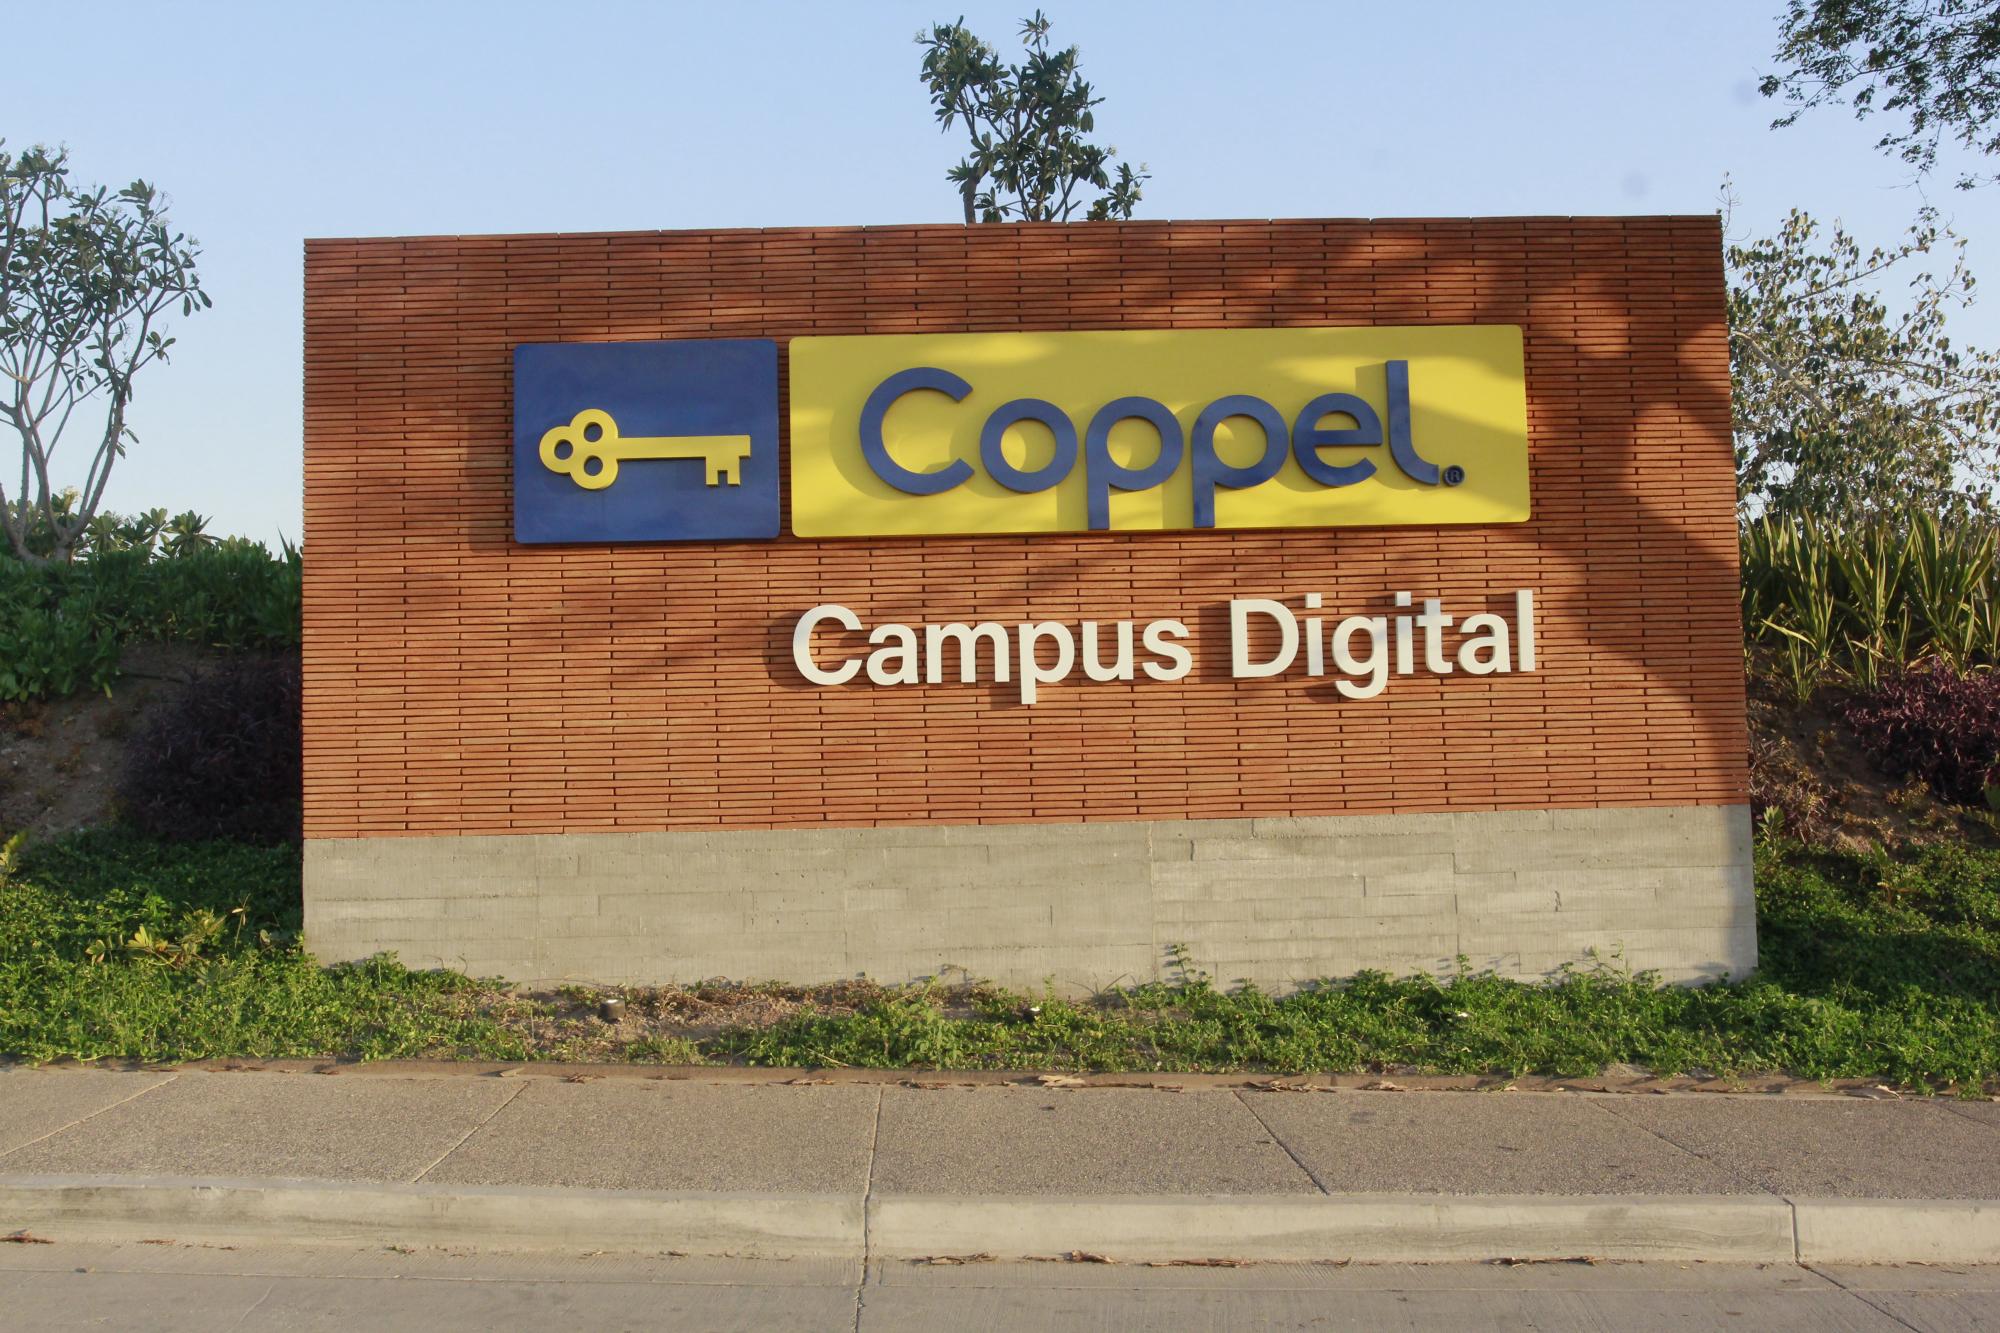 $!Campus Digital Coppel: una apuesta por la innovación, la colaboración y el talento